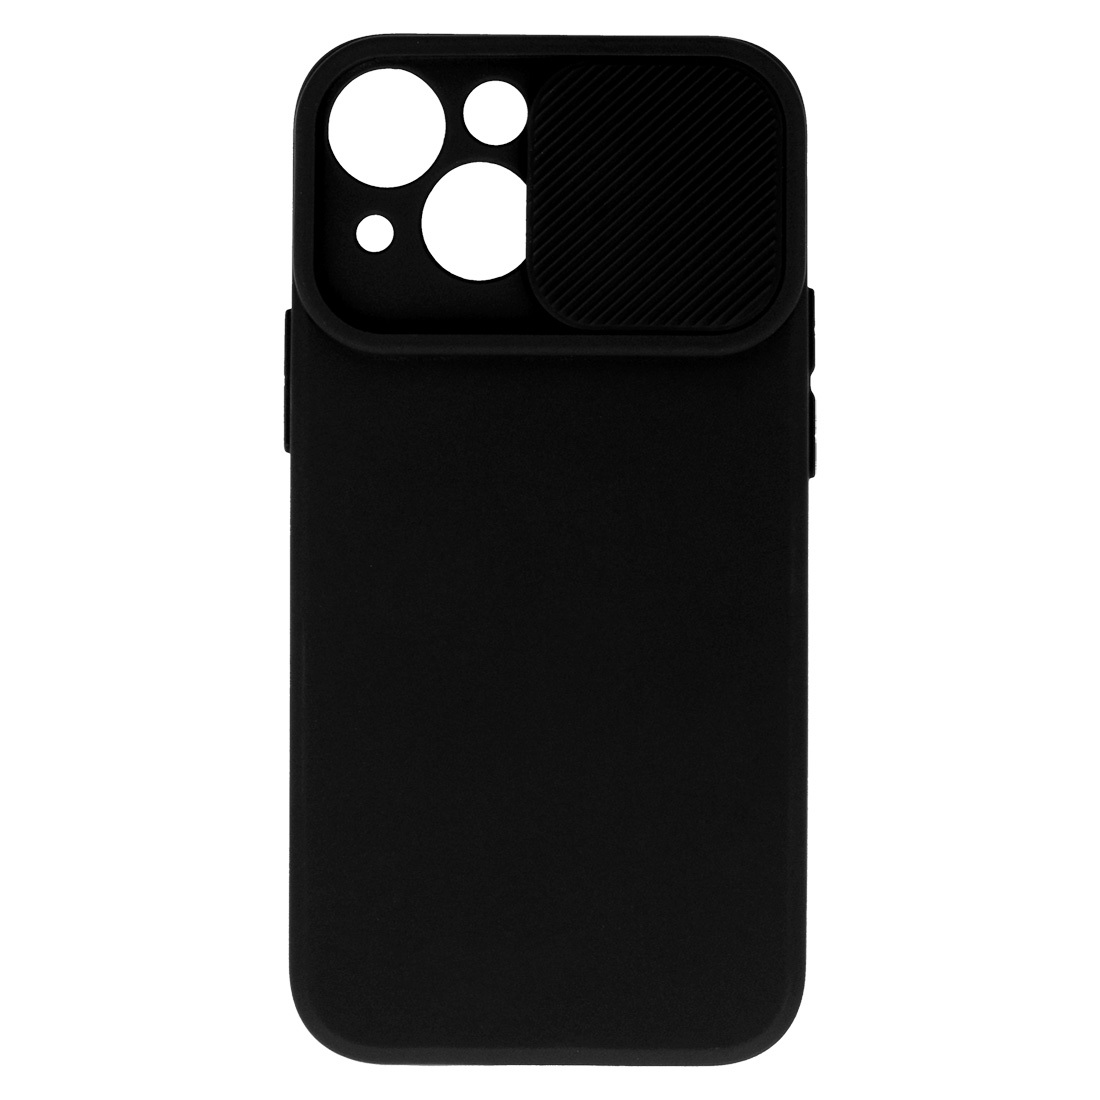 Pokrowiec etui z elastycznego TPU Camshield Soft Case czarne APPLE iPhone 11 / 4